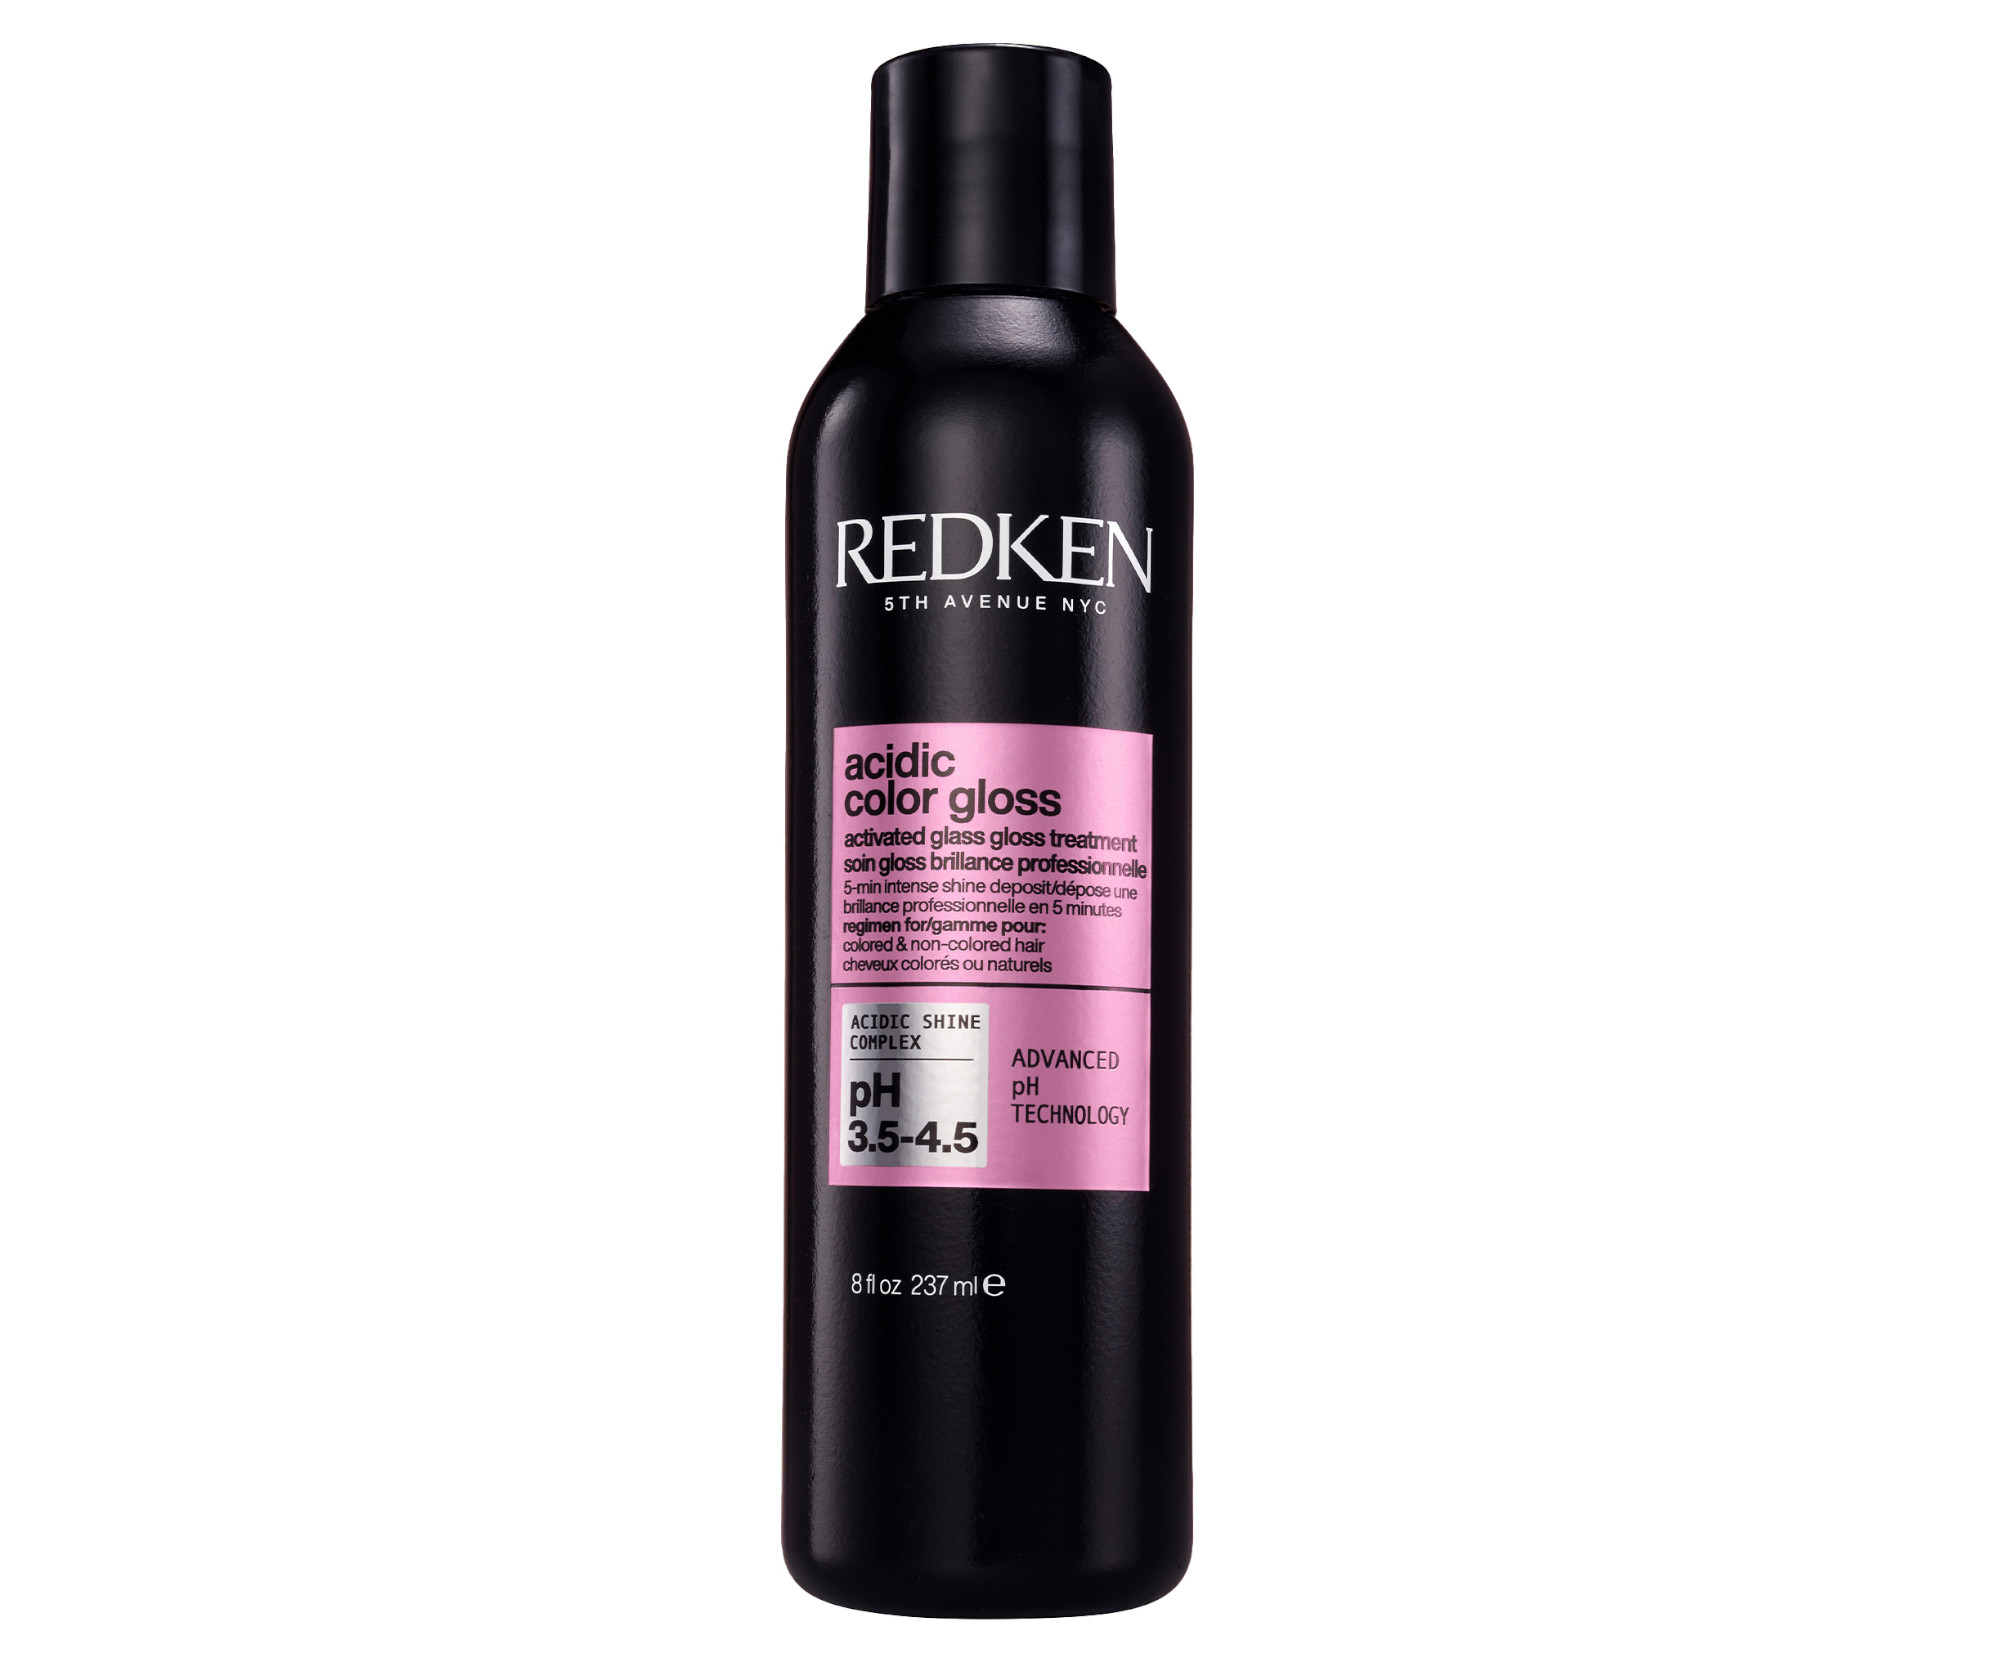 Péče pro intenzivní lesk barvených vlasů Redken Acidic Color Gloss - 237 ml (E2567800) + dárek zdarma